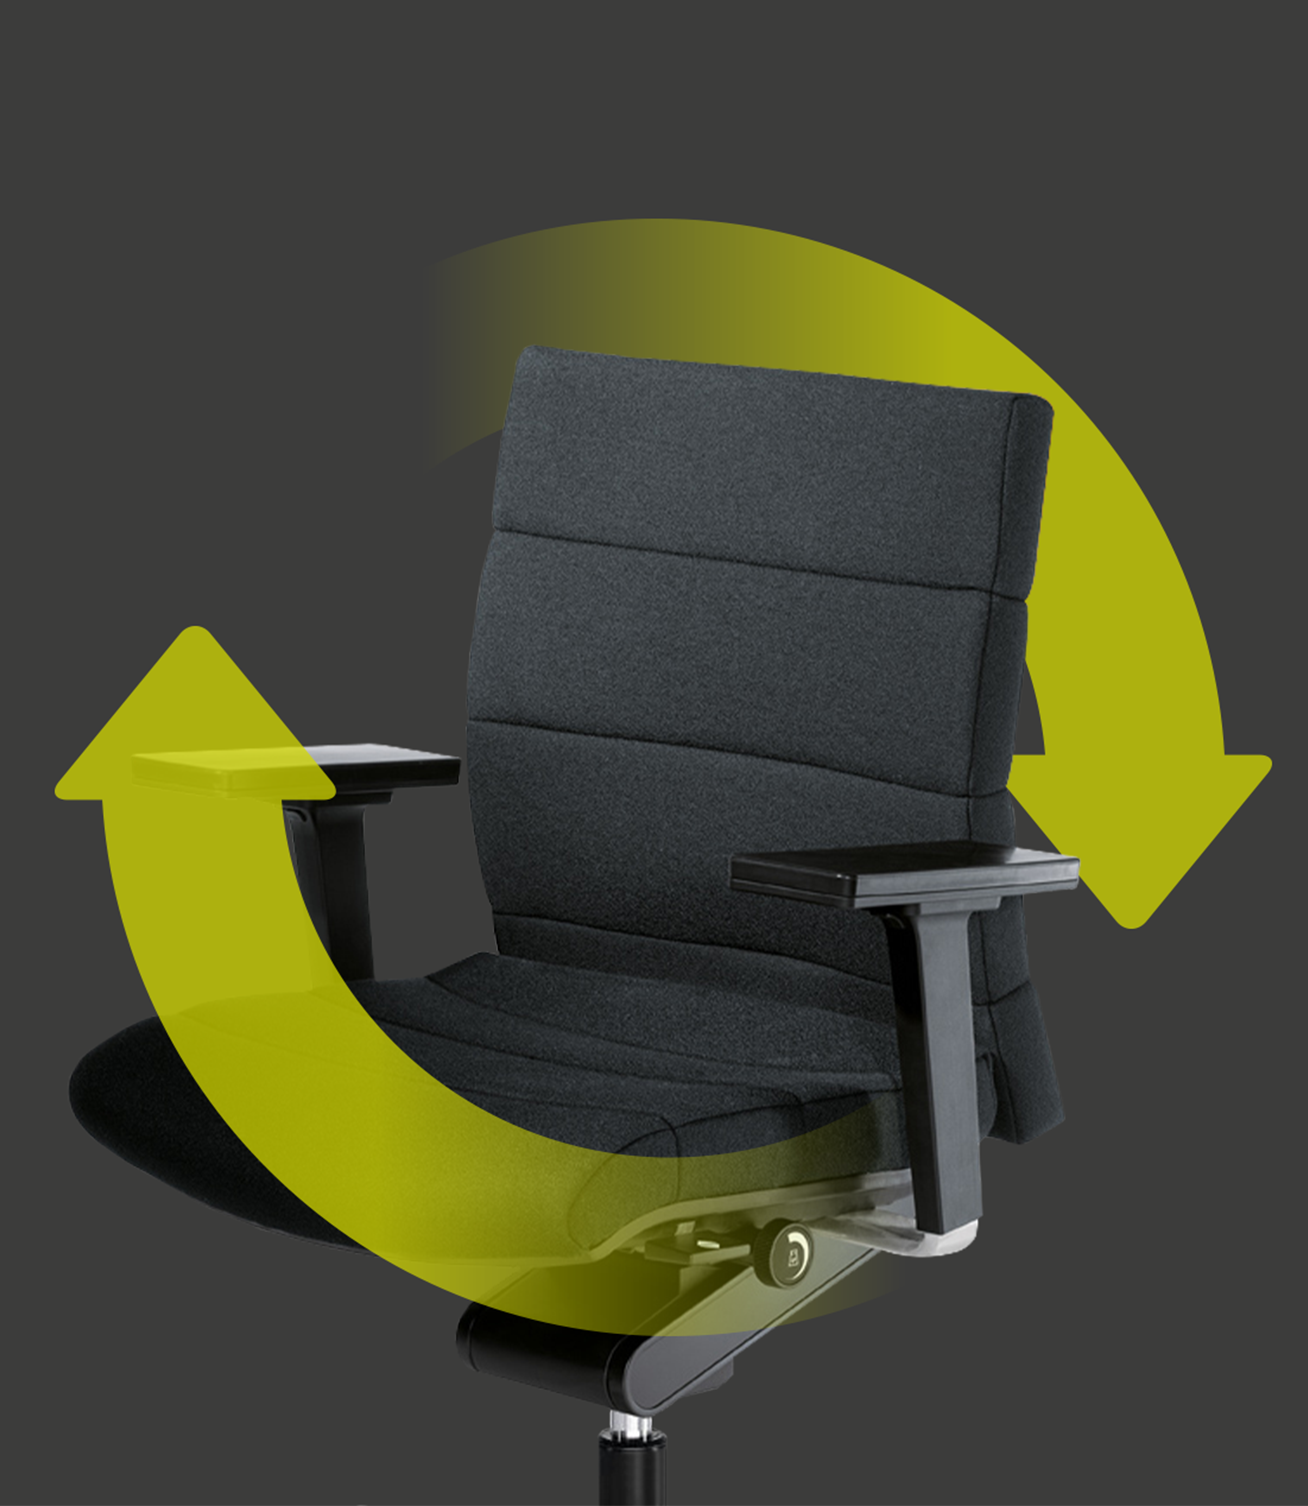 Elegante CHAMP met grijs gestoffeerde zitting en rugleuning en twee groene pijlen die rondom de stoel een cirkel vormen. Deze geven de duurzaamheid en herbruikbaarheid van de stoel aan.